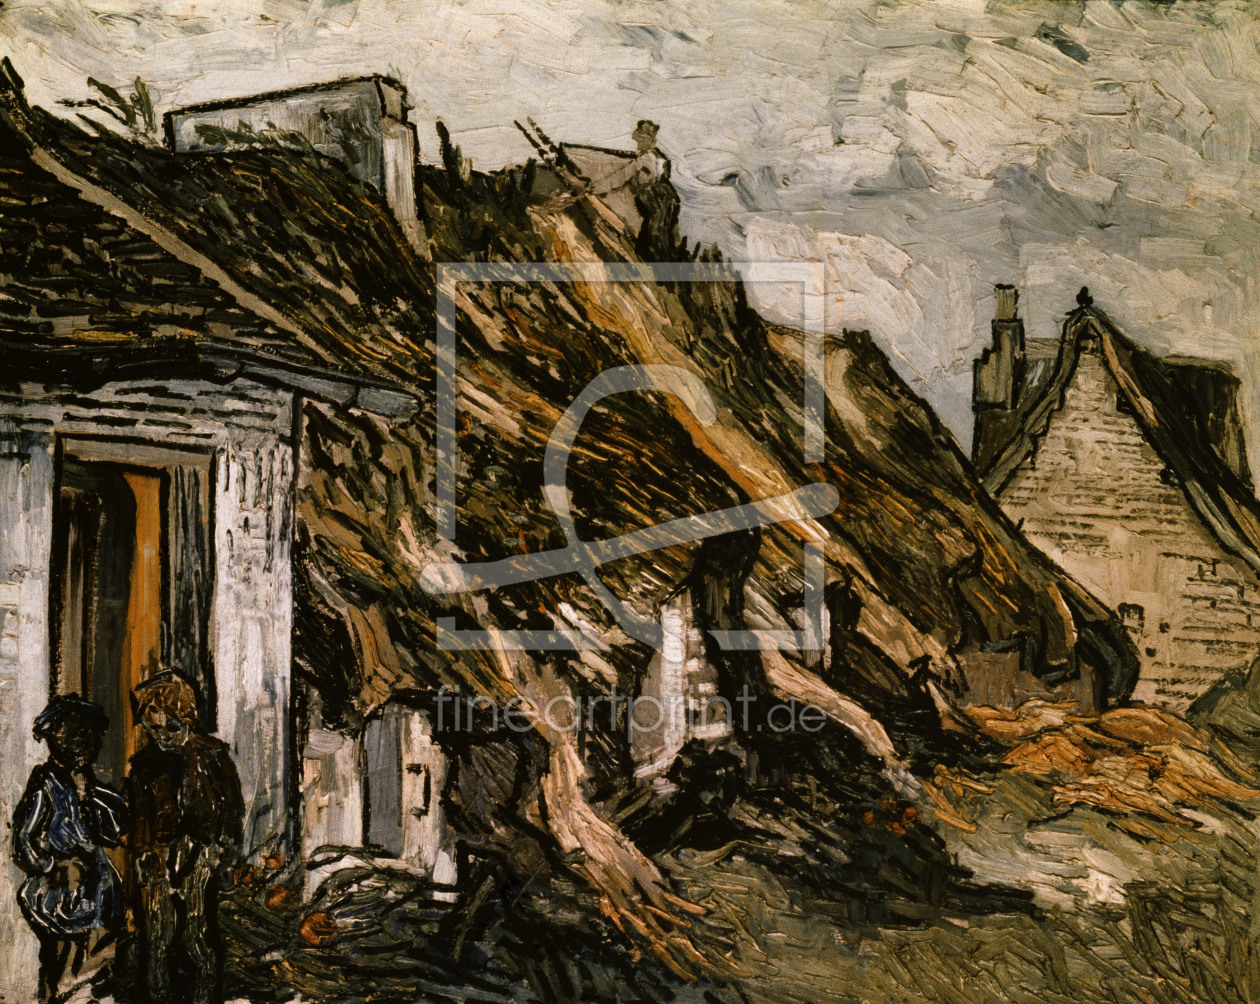 Bild-Nr.: 30002876 V.van Gogh, Cottages in Chaponval / Ptg. erstellt von van Gogh, Vincent